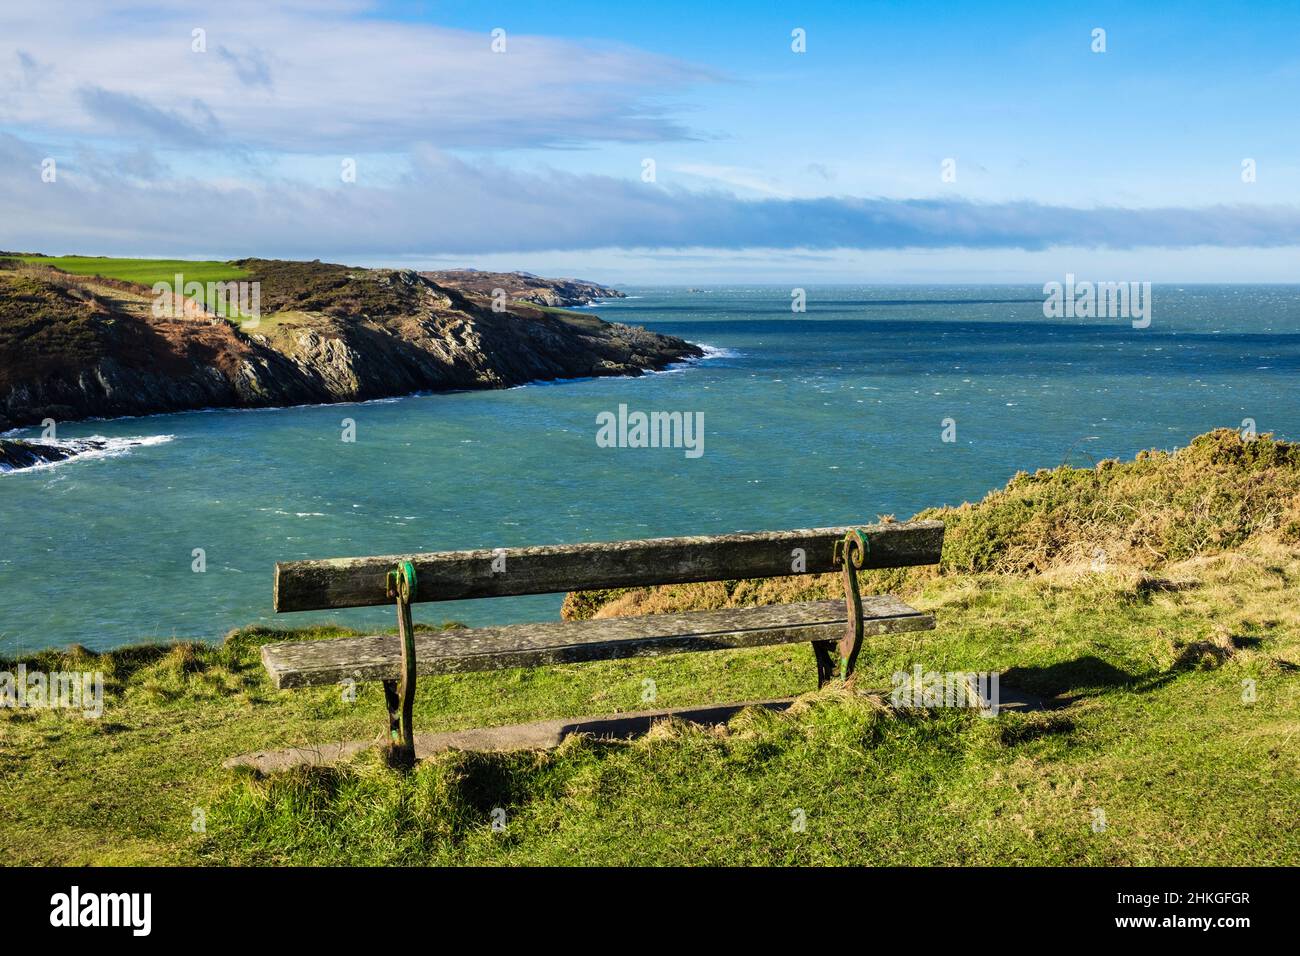 Panca che si affaccia su Porth Eilian con vista lungo la costa rocciosa da Point Lynas. Llaneilian, Amlwch, Isola di Anglesey, Galles del Nord, Regno Unito, Regno Unito Foto Stock